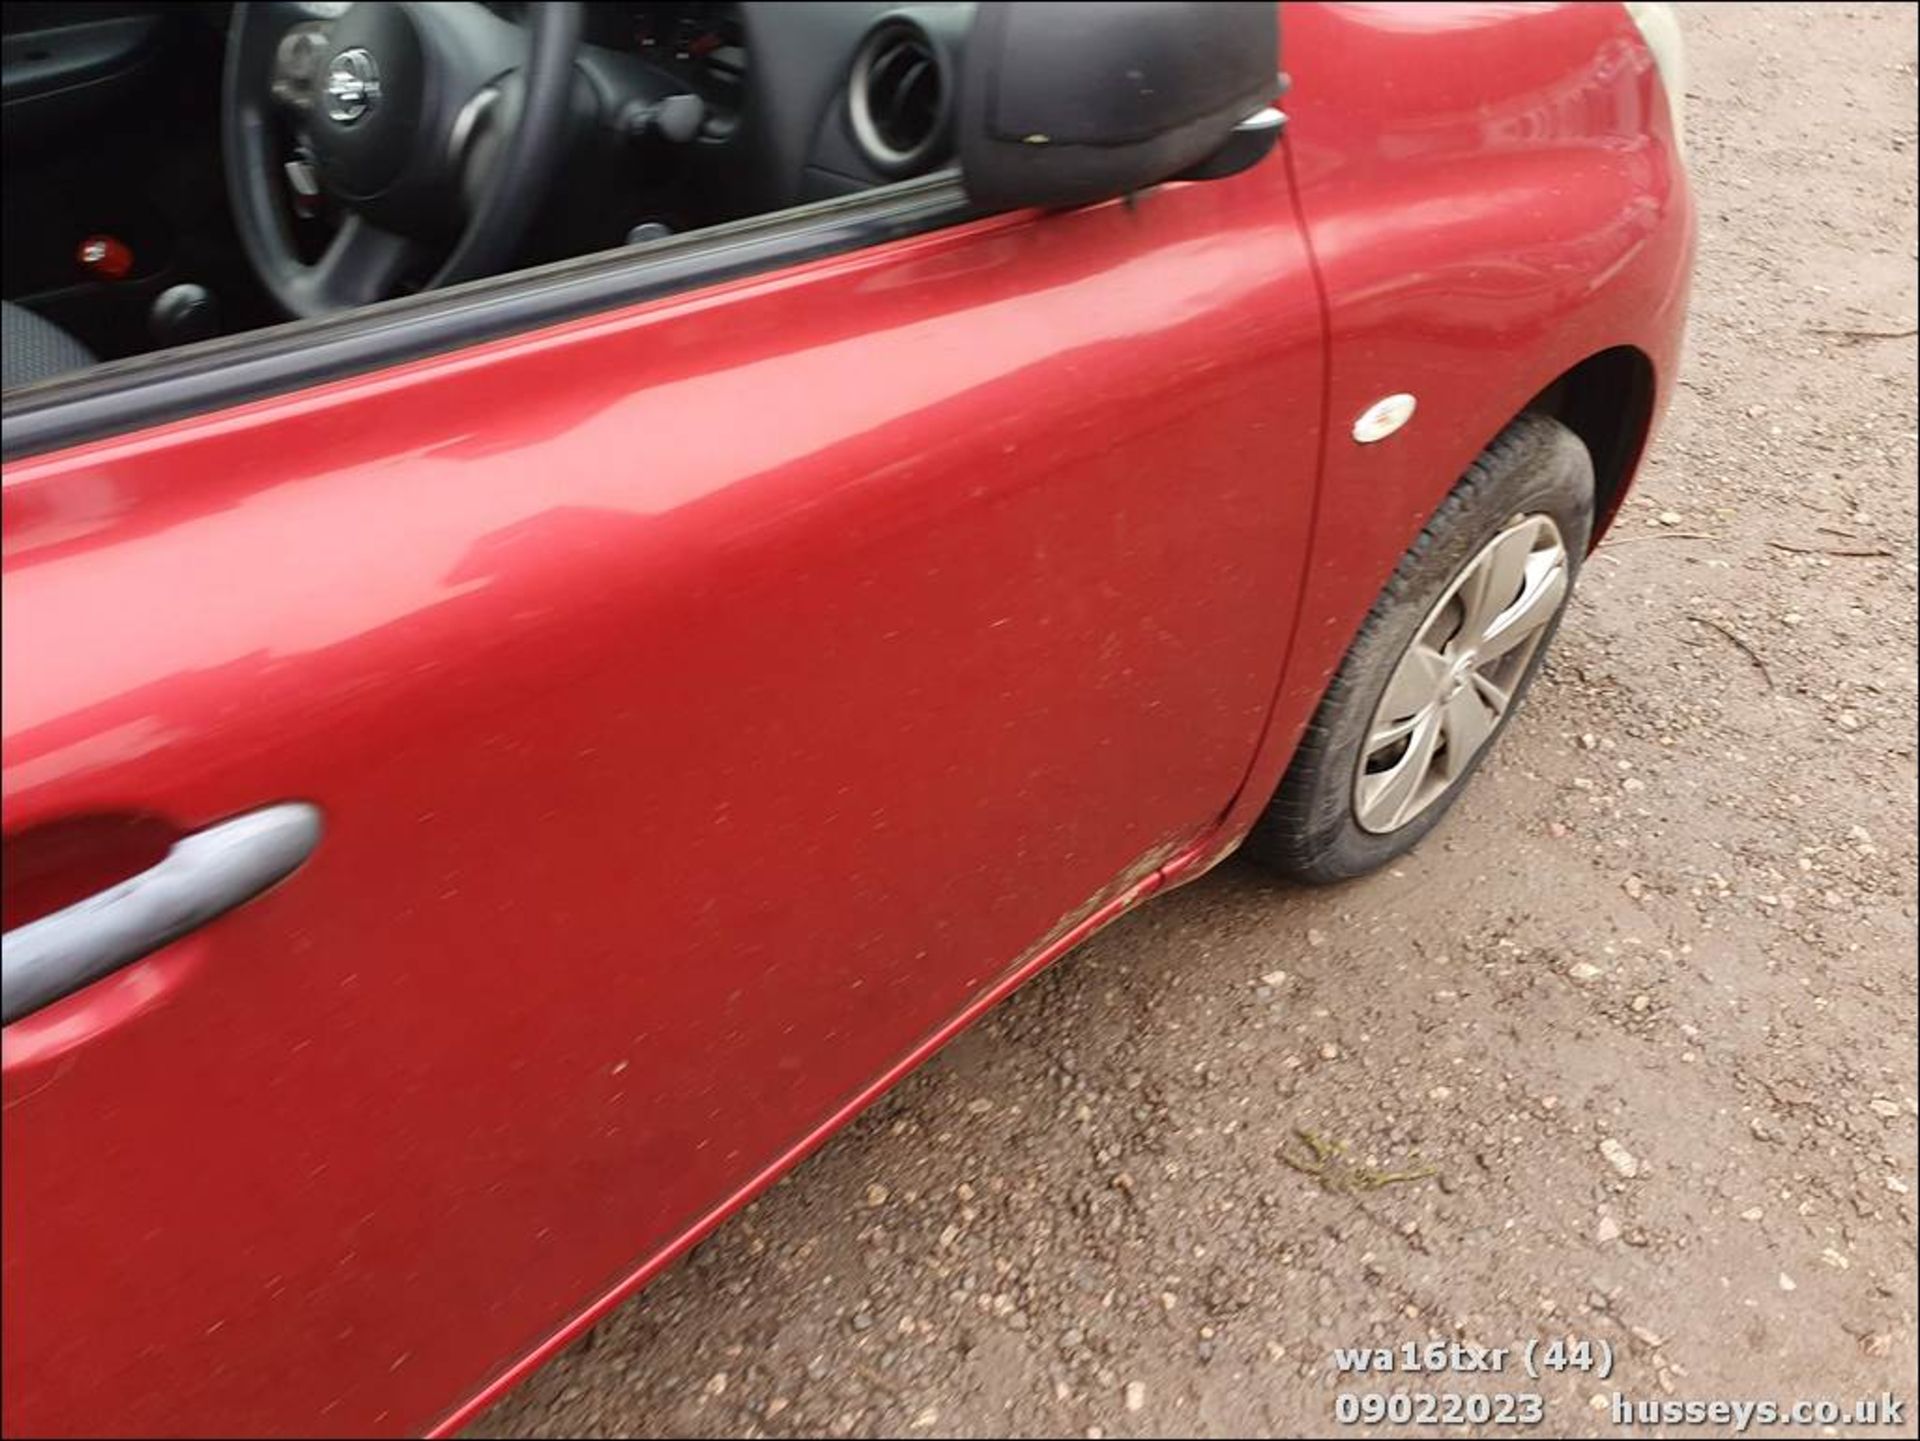 16/16 NISSAN MICRA VISIA - 1198cc 5dr Hatchback (Red, 18k) - Image 44 of 52